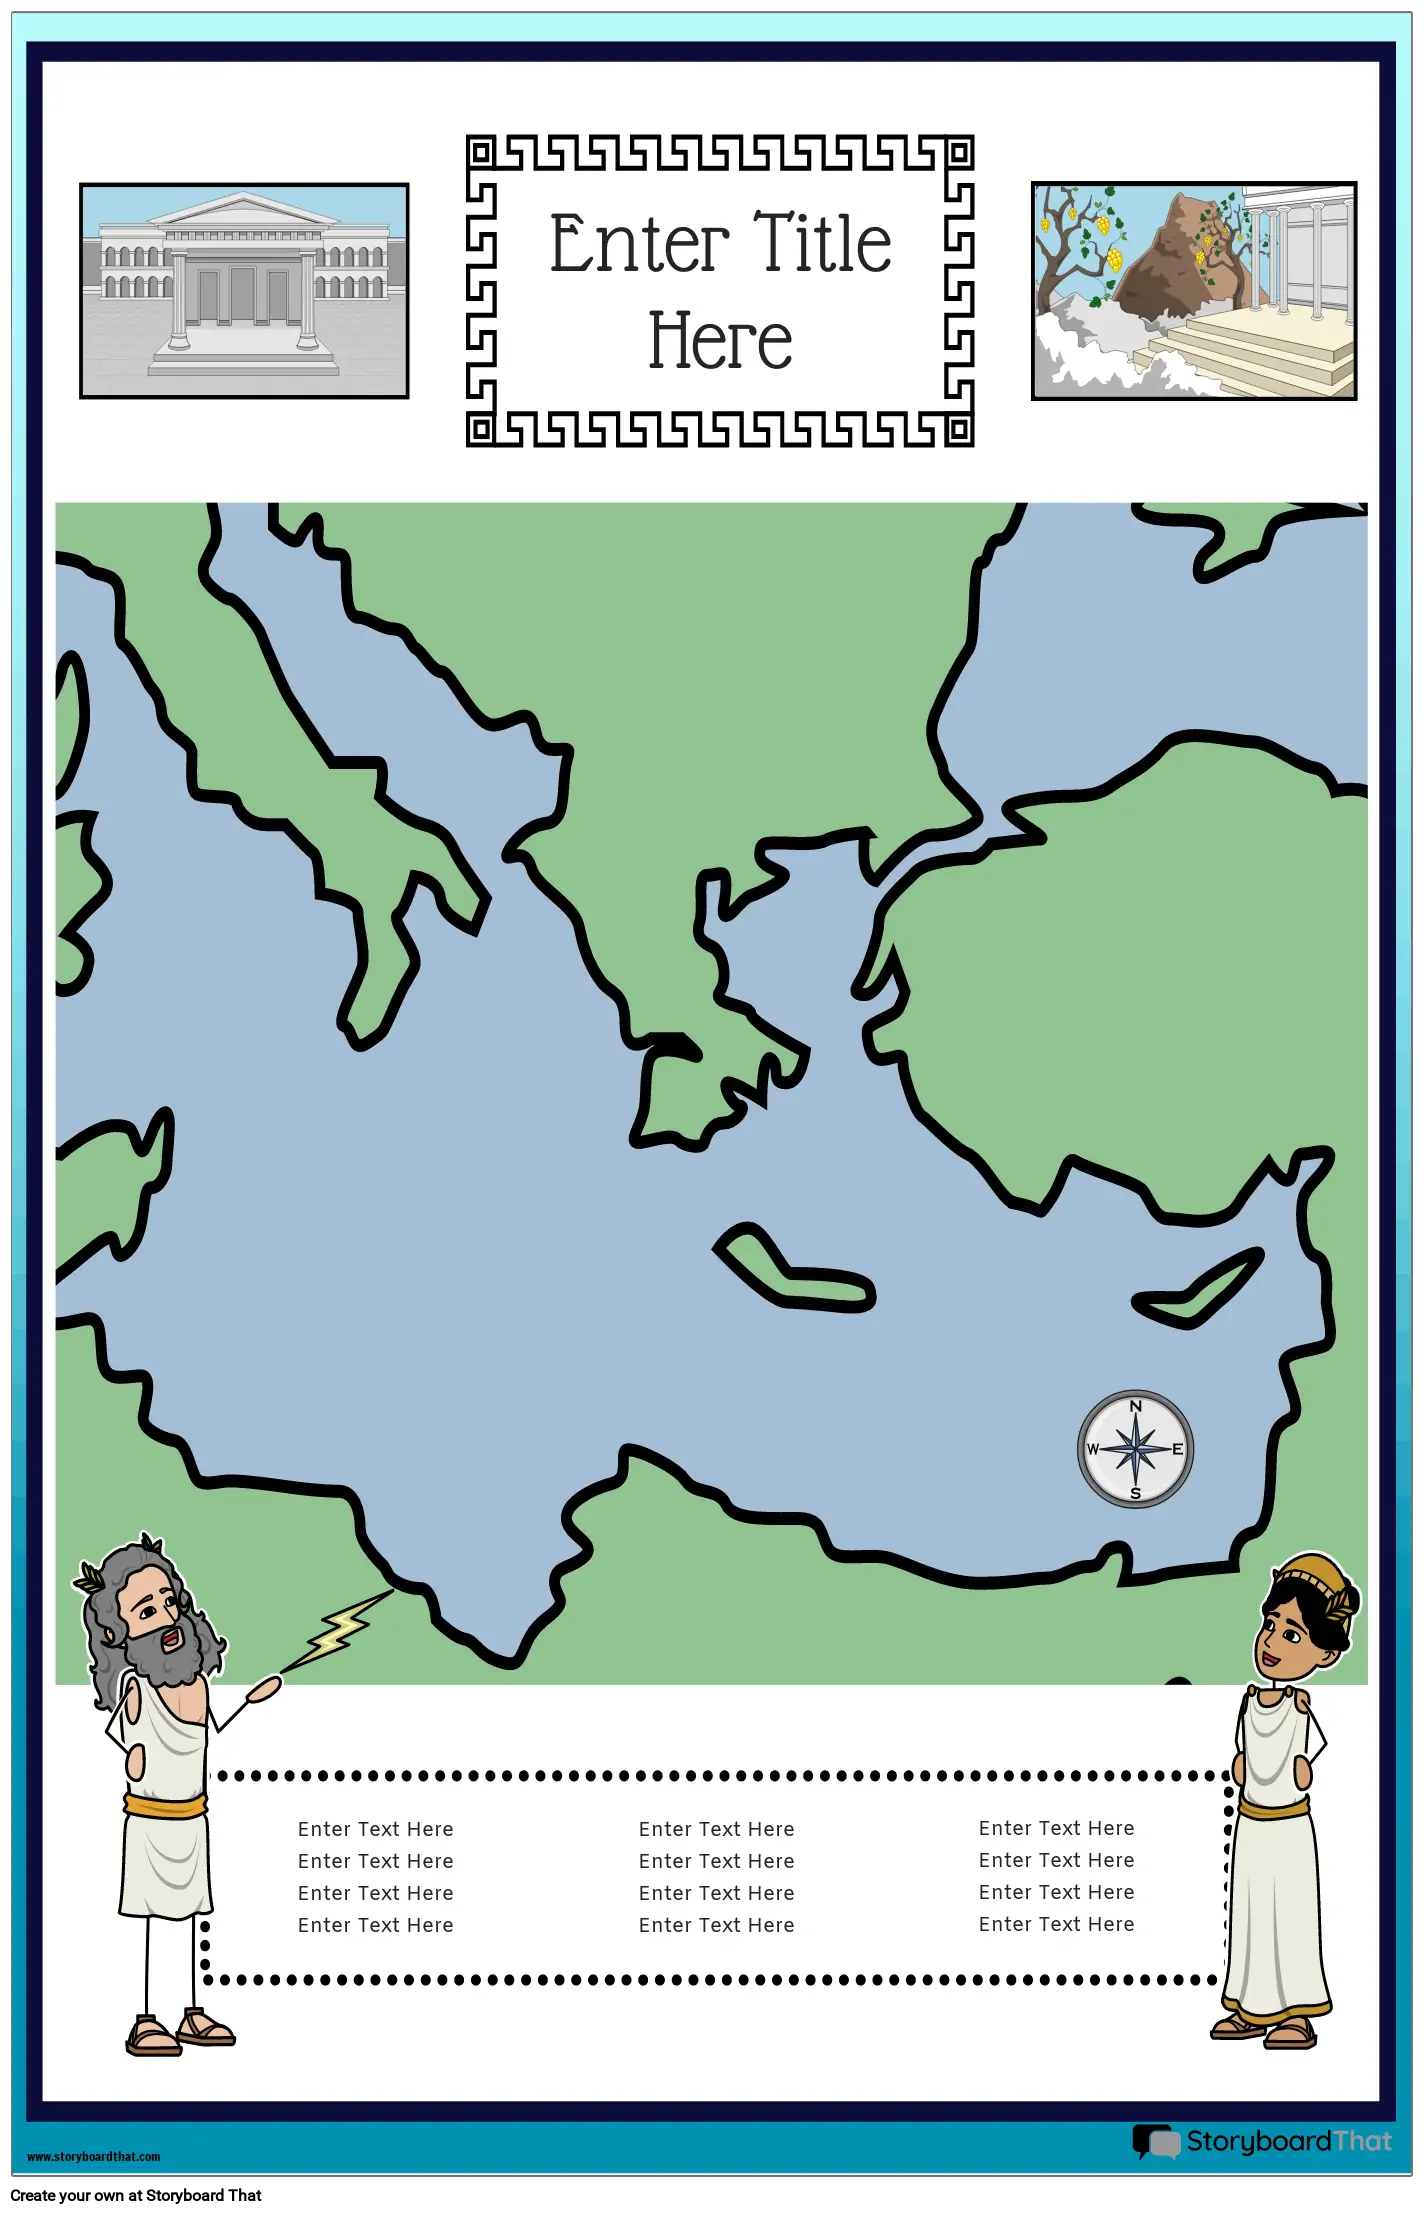 नक्शा पोस्टर 34 रंग पोर्ट्रेट प्राचीन ग्रीस